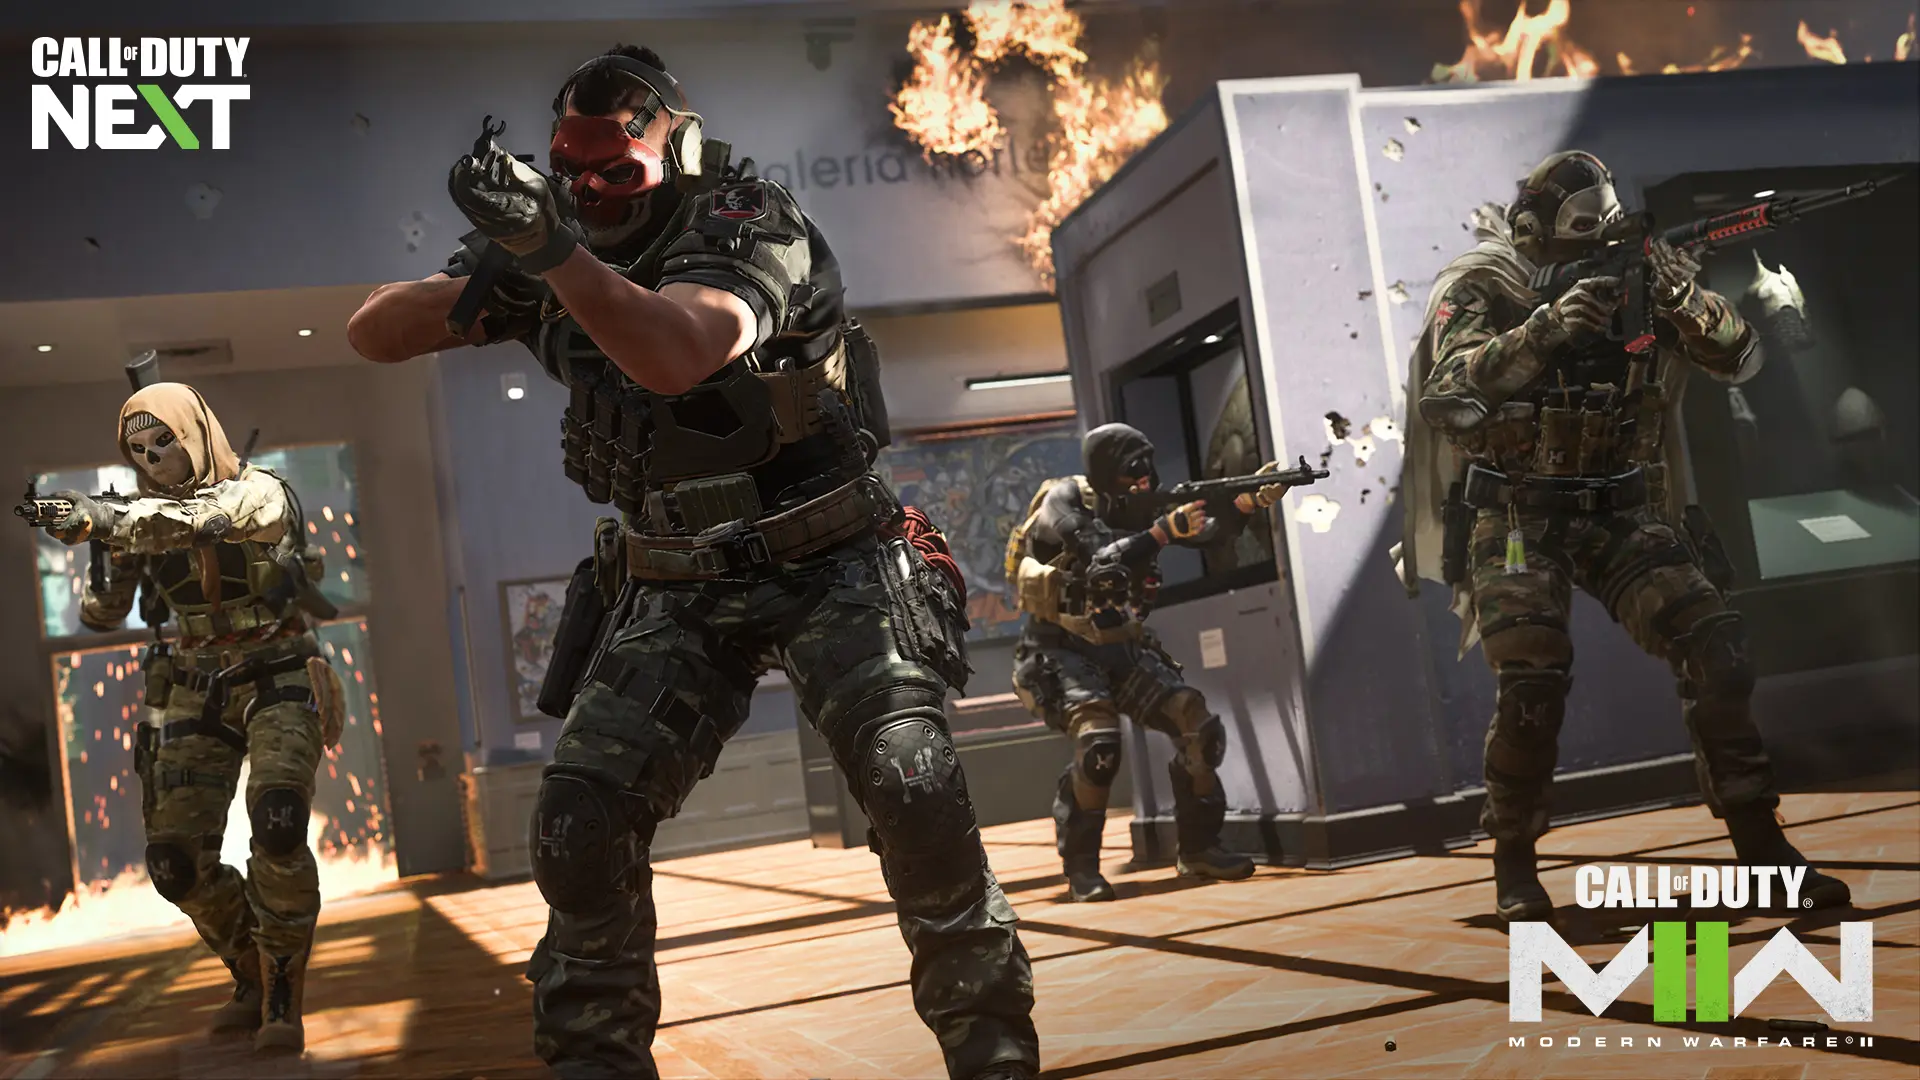 Modern Warfare 3: Novos combates, modos multiplayer e outros recursos